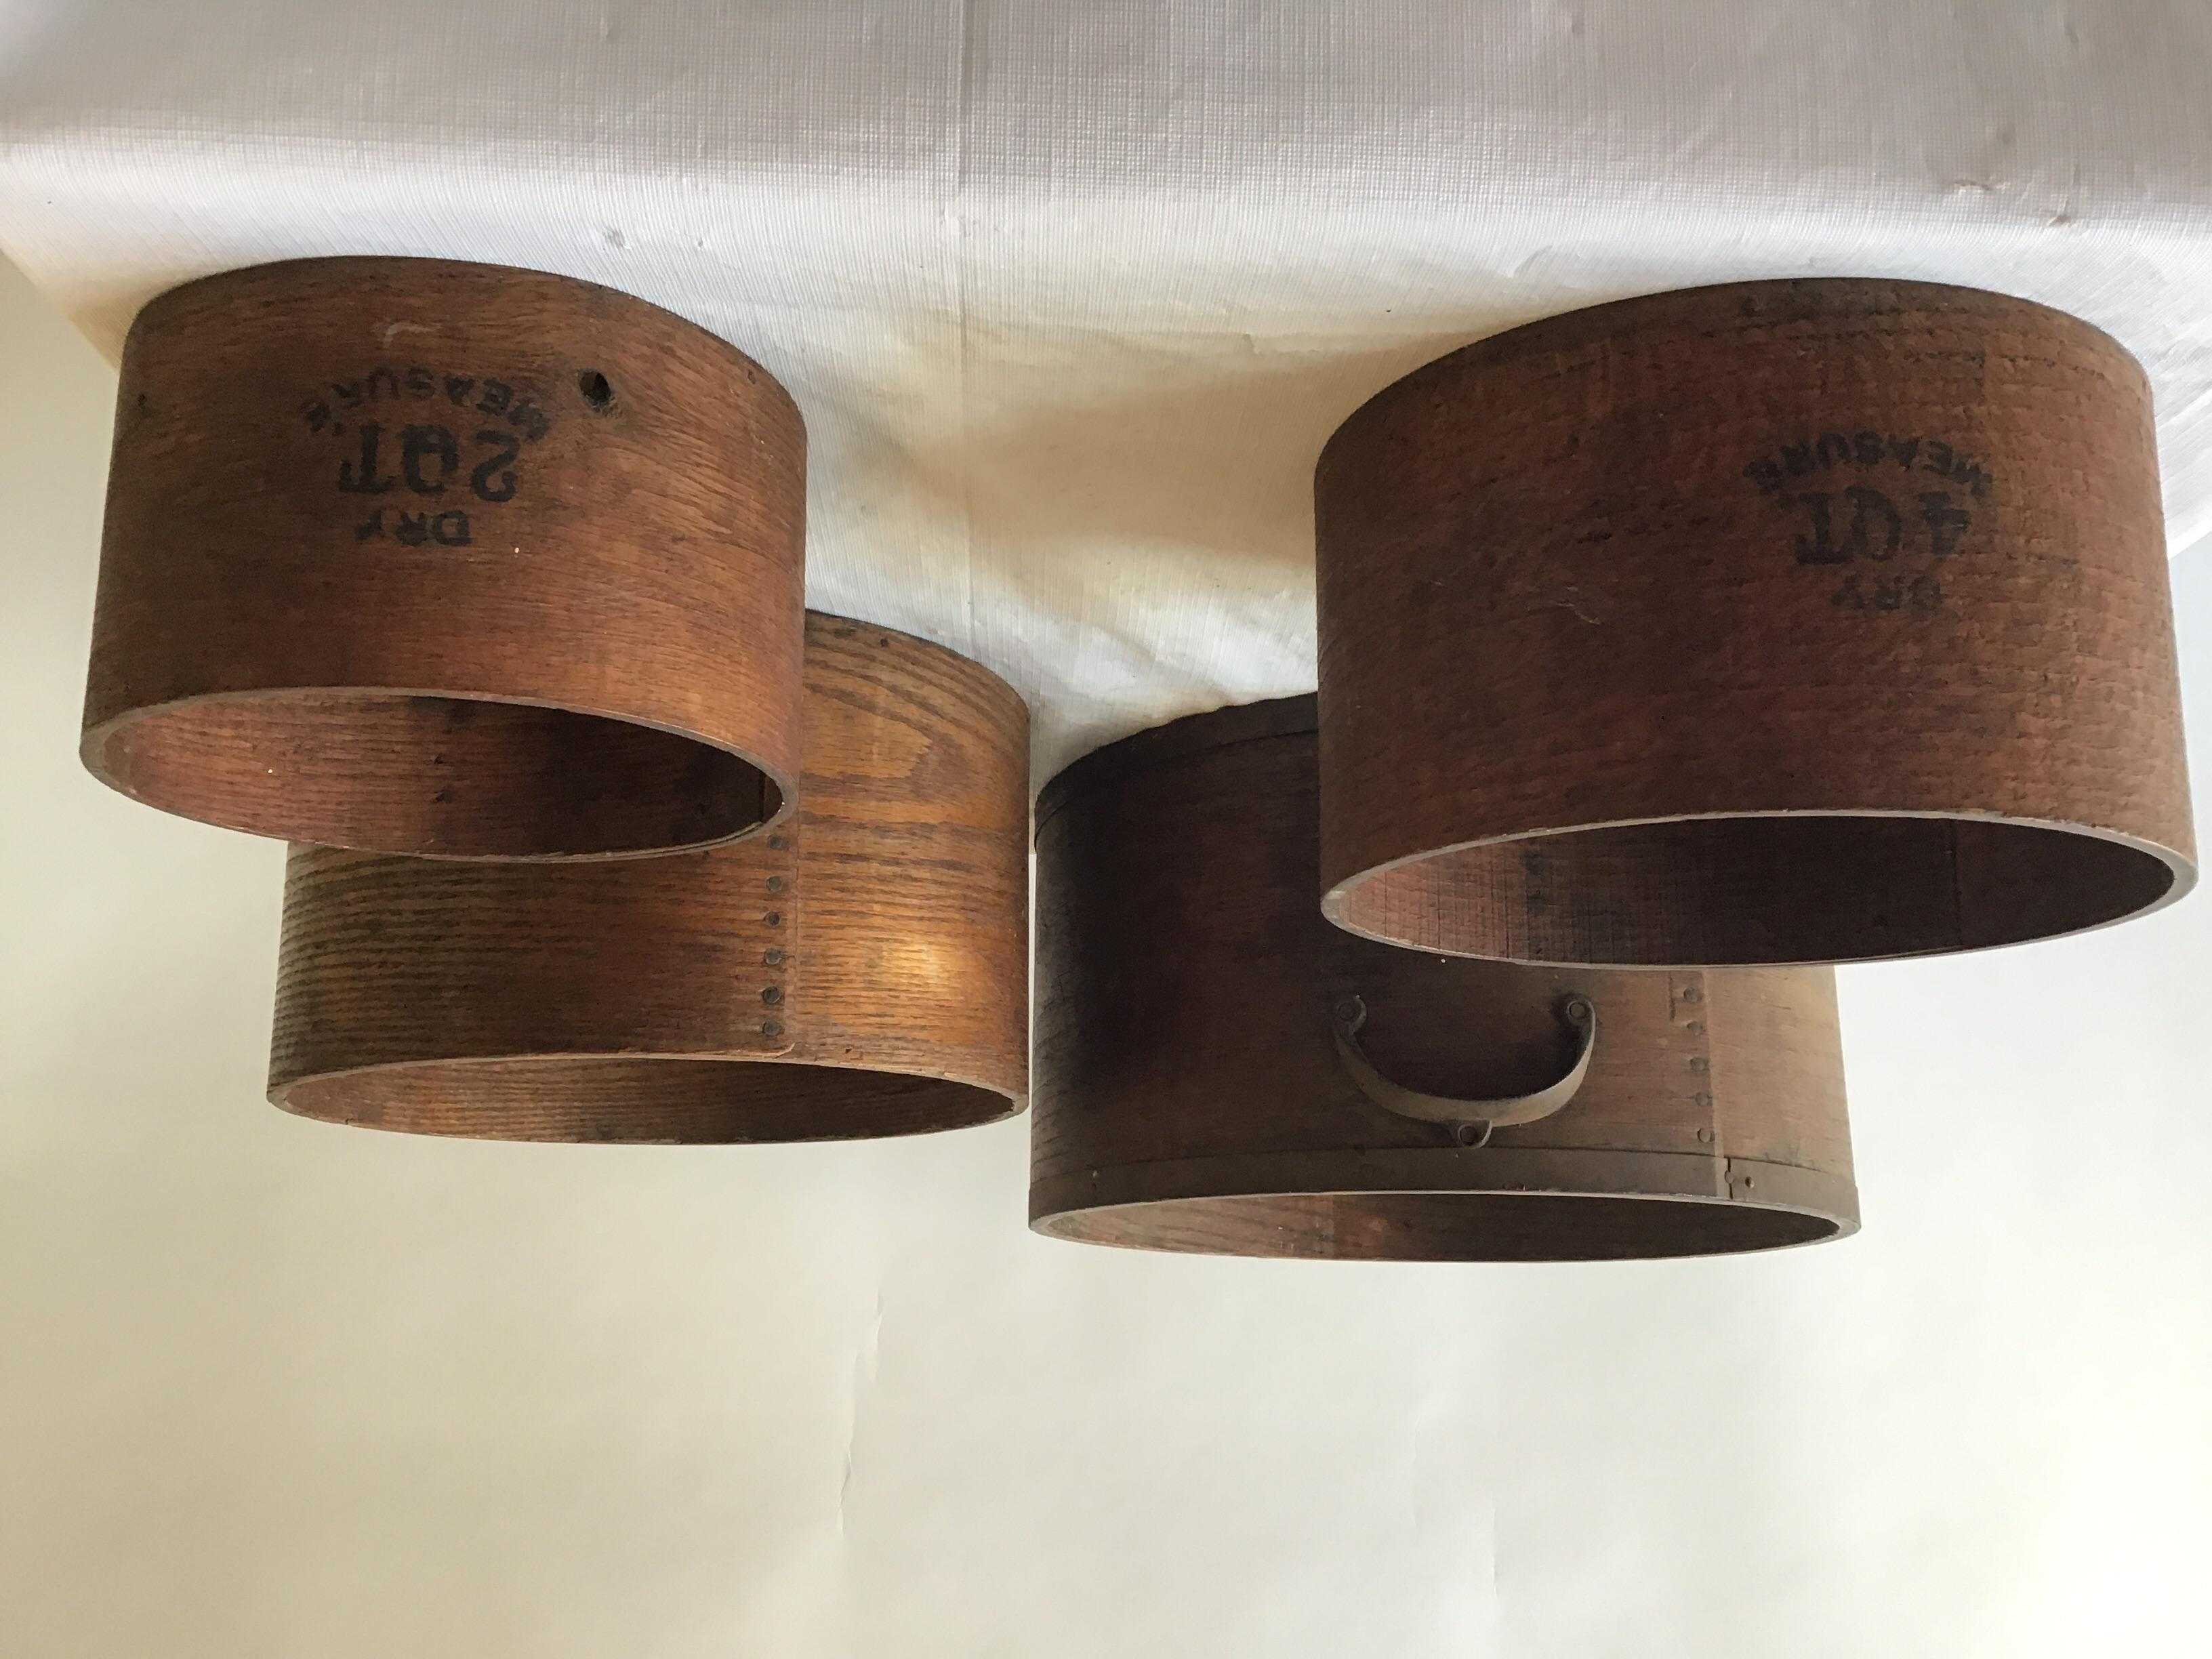 Quatre récipients de mesure en bois de EB Frye and Sons du 19e siècle.